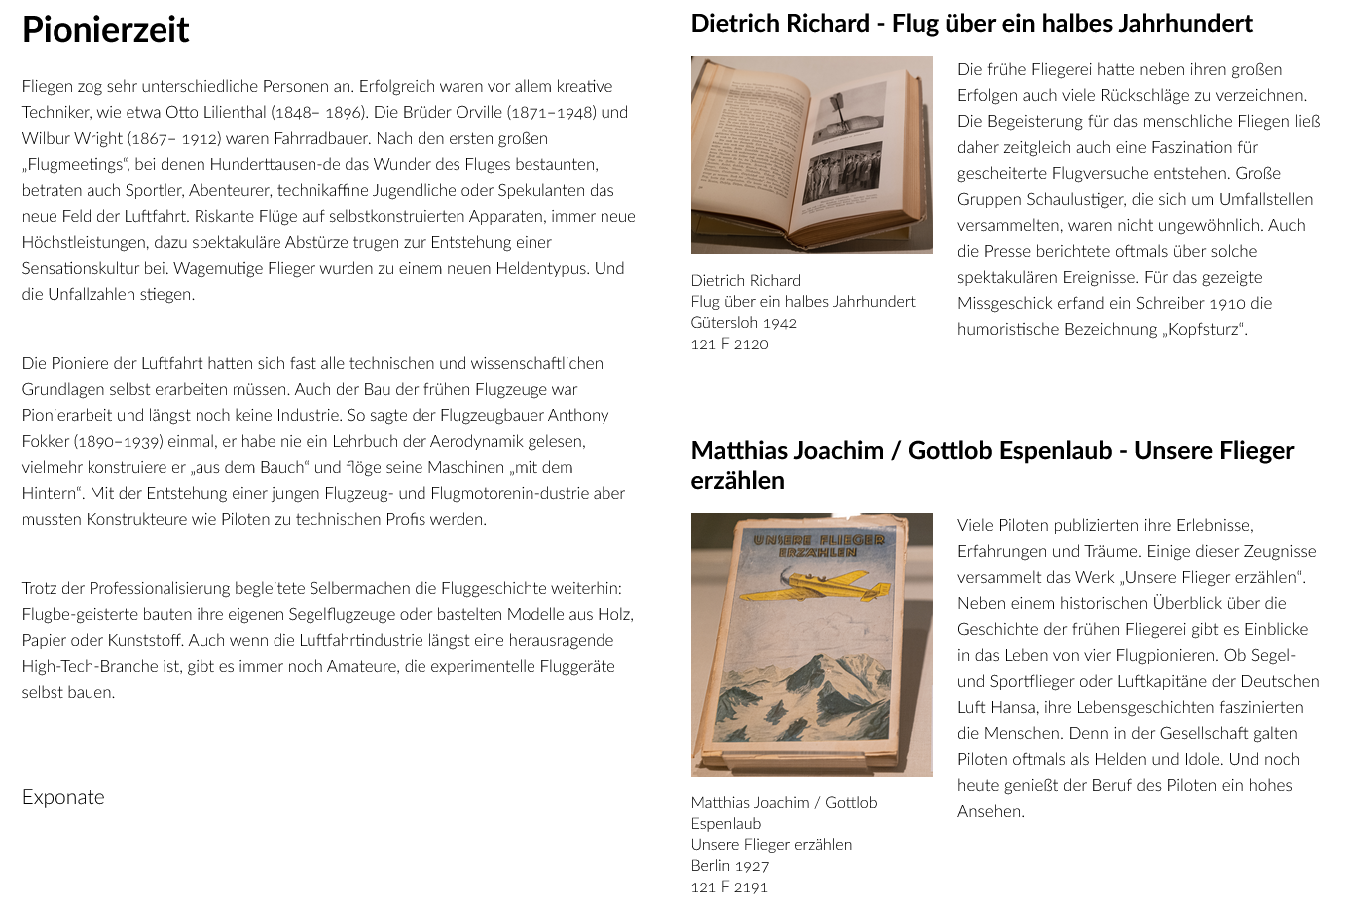 Zu sehen ist ein Screenshot der Webseite der Badischen Landesbibliothek, auf der die virtuelle Ausstellung „Faszination Fliegen“ präsentiert wird.